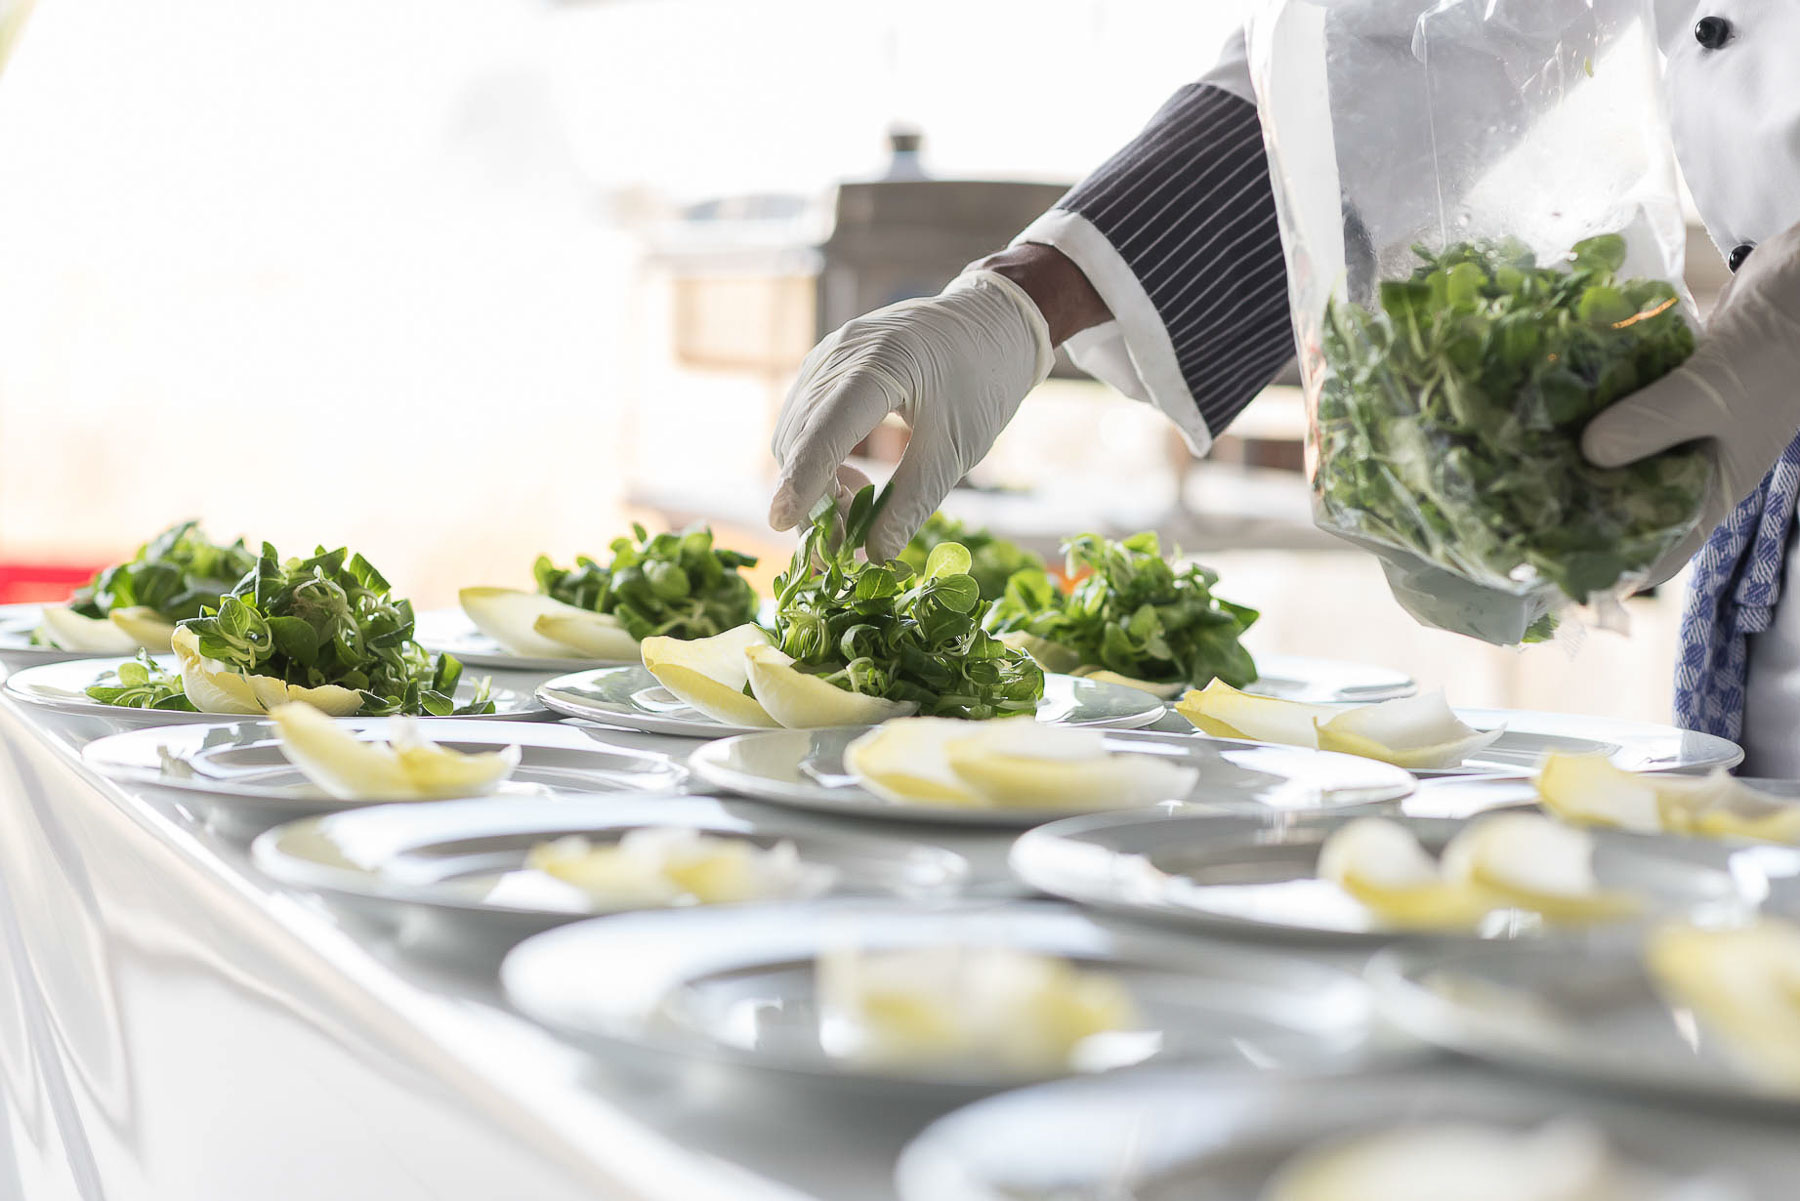 Blattsalat wird auf den Tellern mit Handschuhen dekoriert.